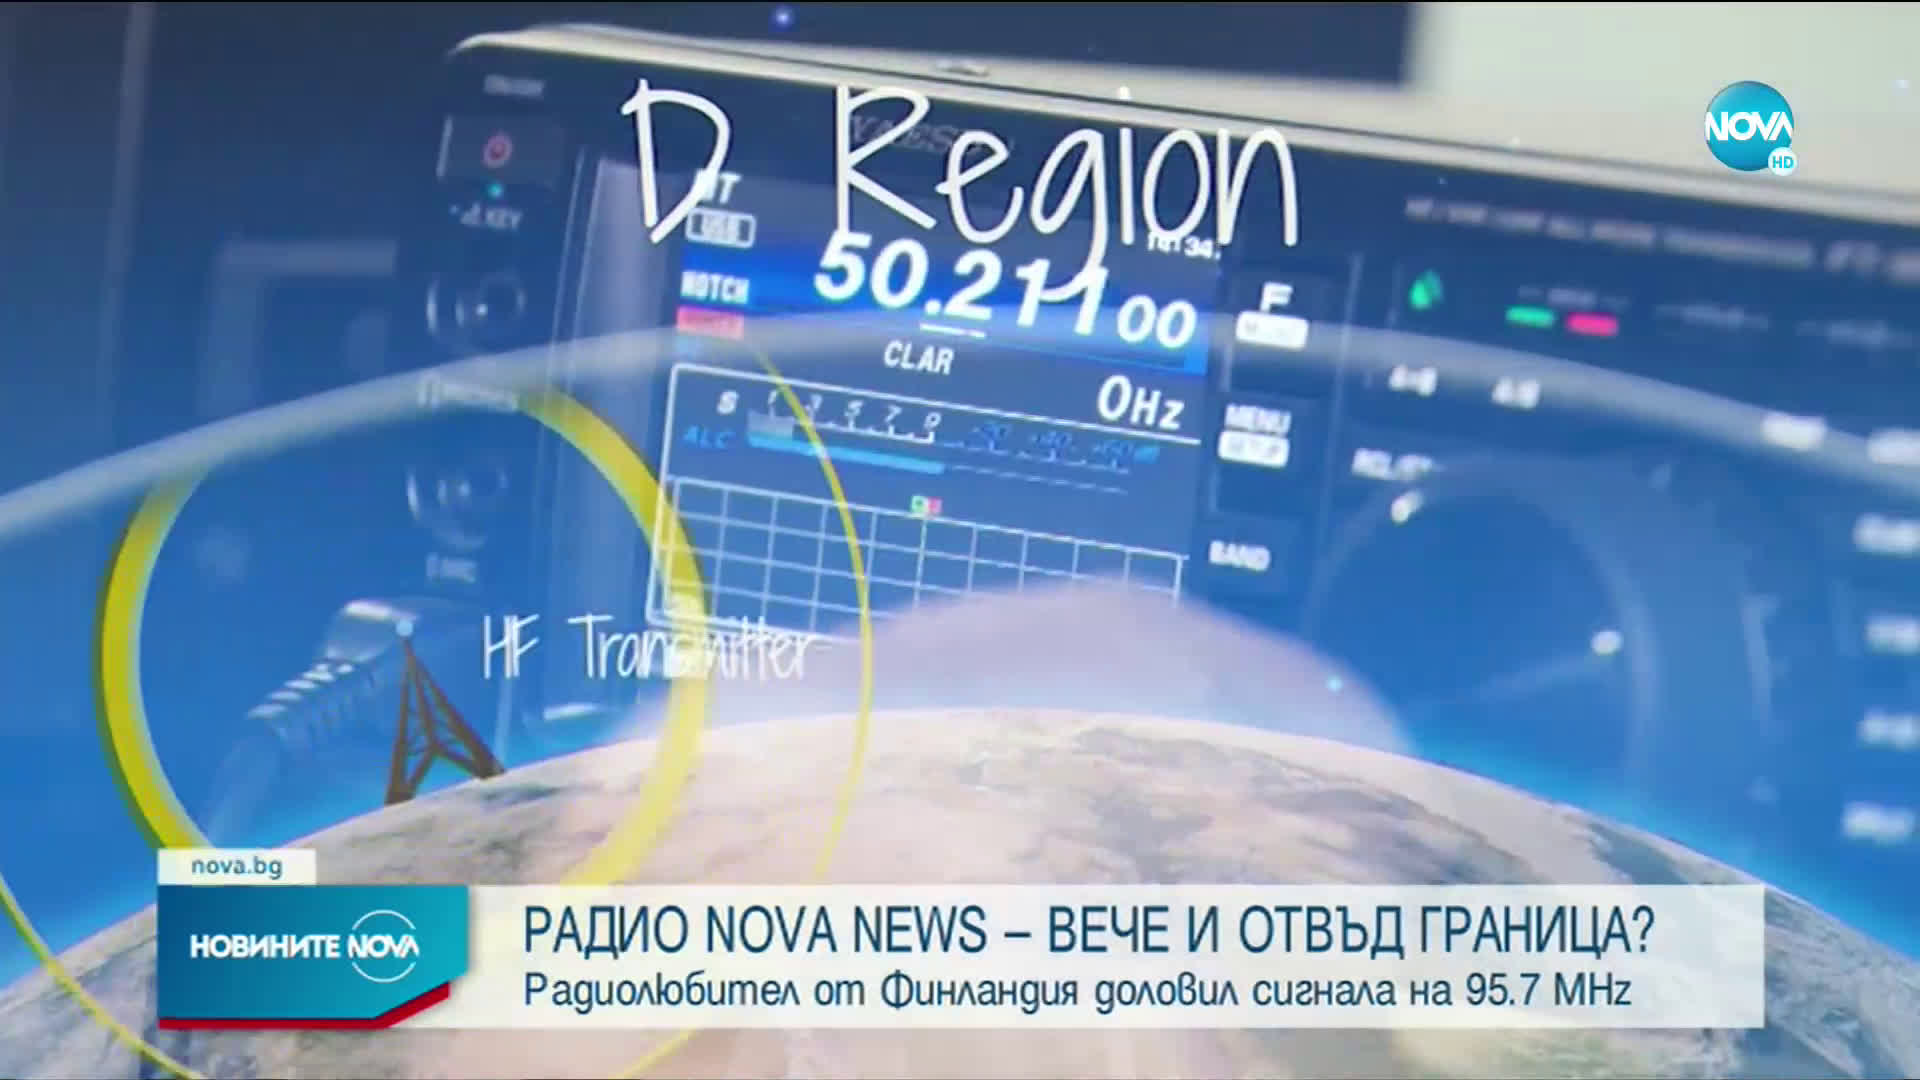 ФИЗИЧЕН ФЕНОМЕН: Радиолюбител от Финландия доловил сигнала на Nova News